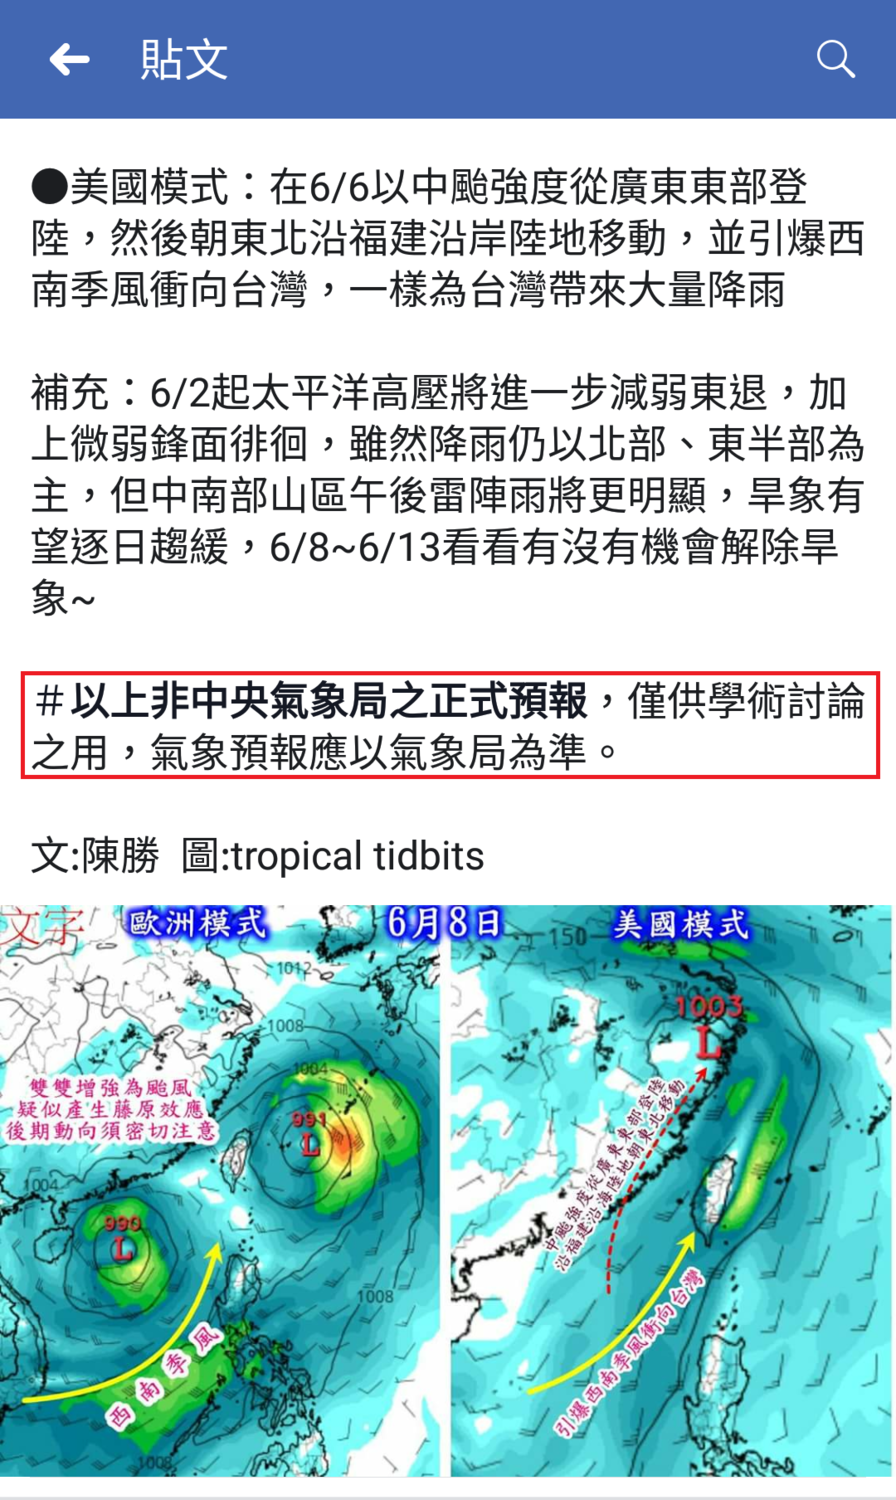 《觀氣象看天氣》FB粉絲專頁在昨(29日)指出，根據歐美模式觀察台灣恐將面臨雙颱影響，引起許多氣象專家反彈，認為這種不確定性過大的消息，直接發布在公開的平台上，會引起觀眾的恐慌，中央氣象局也回應，是否違法需再審議。